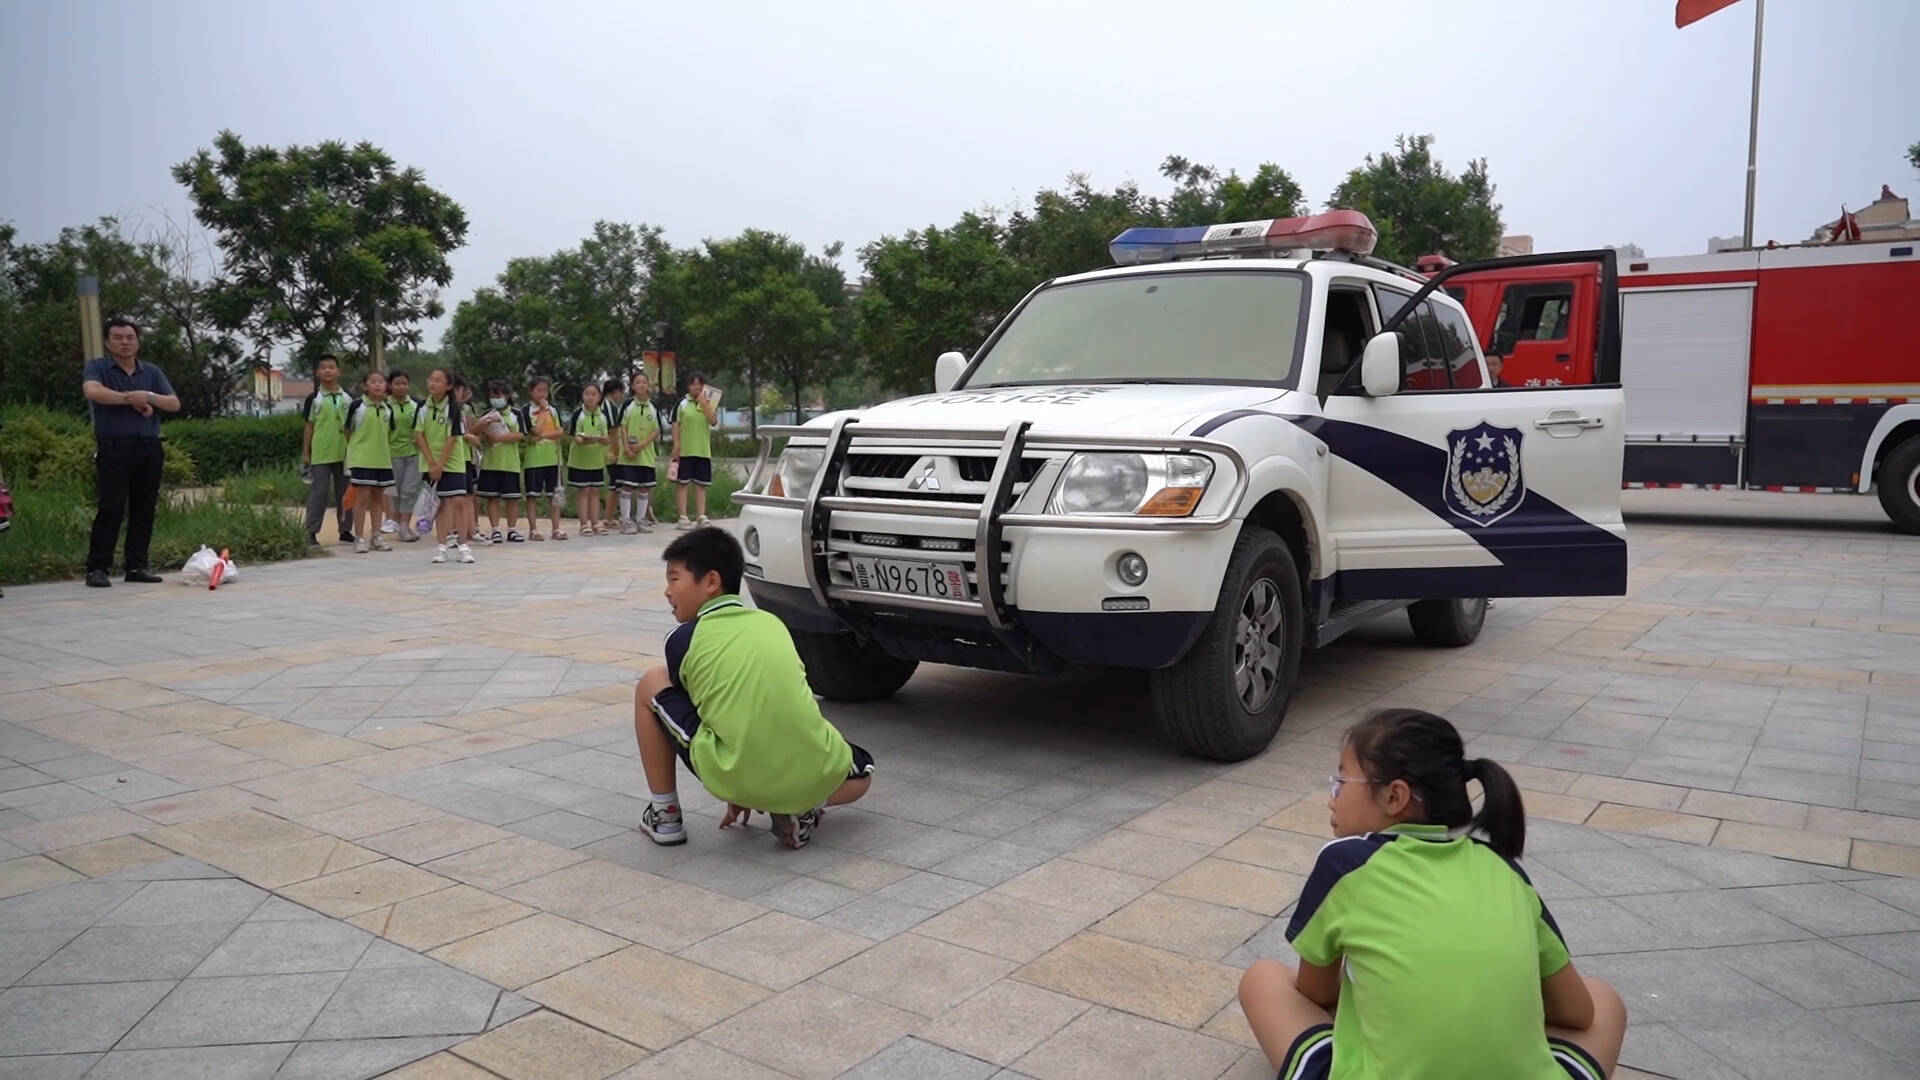 体验汽车盲区、学习急救技能……武城开展多样化暑期安全教育活动